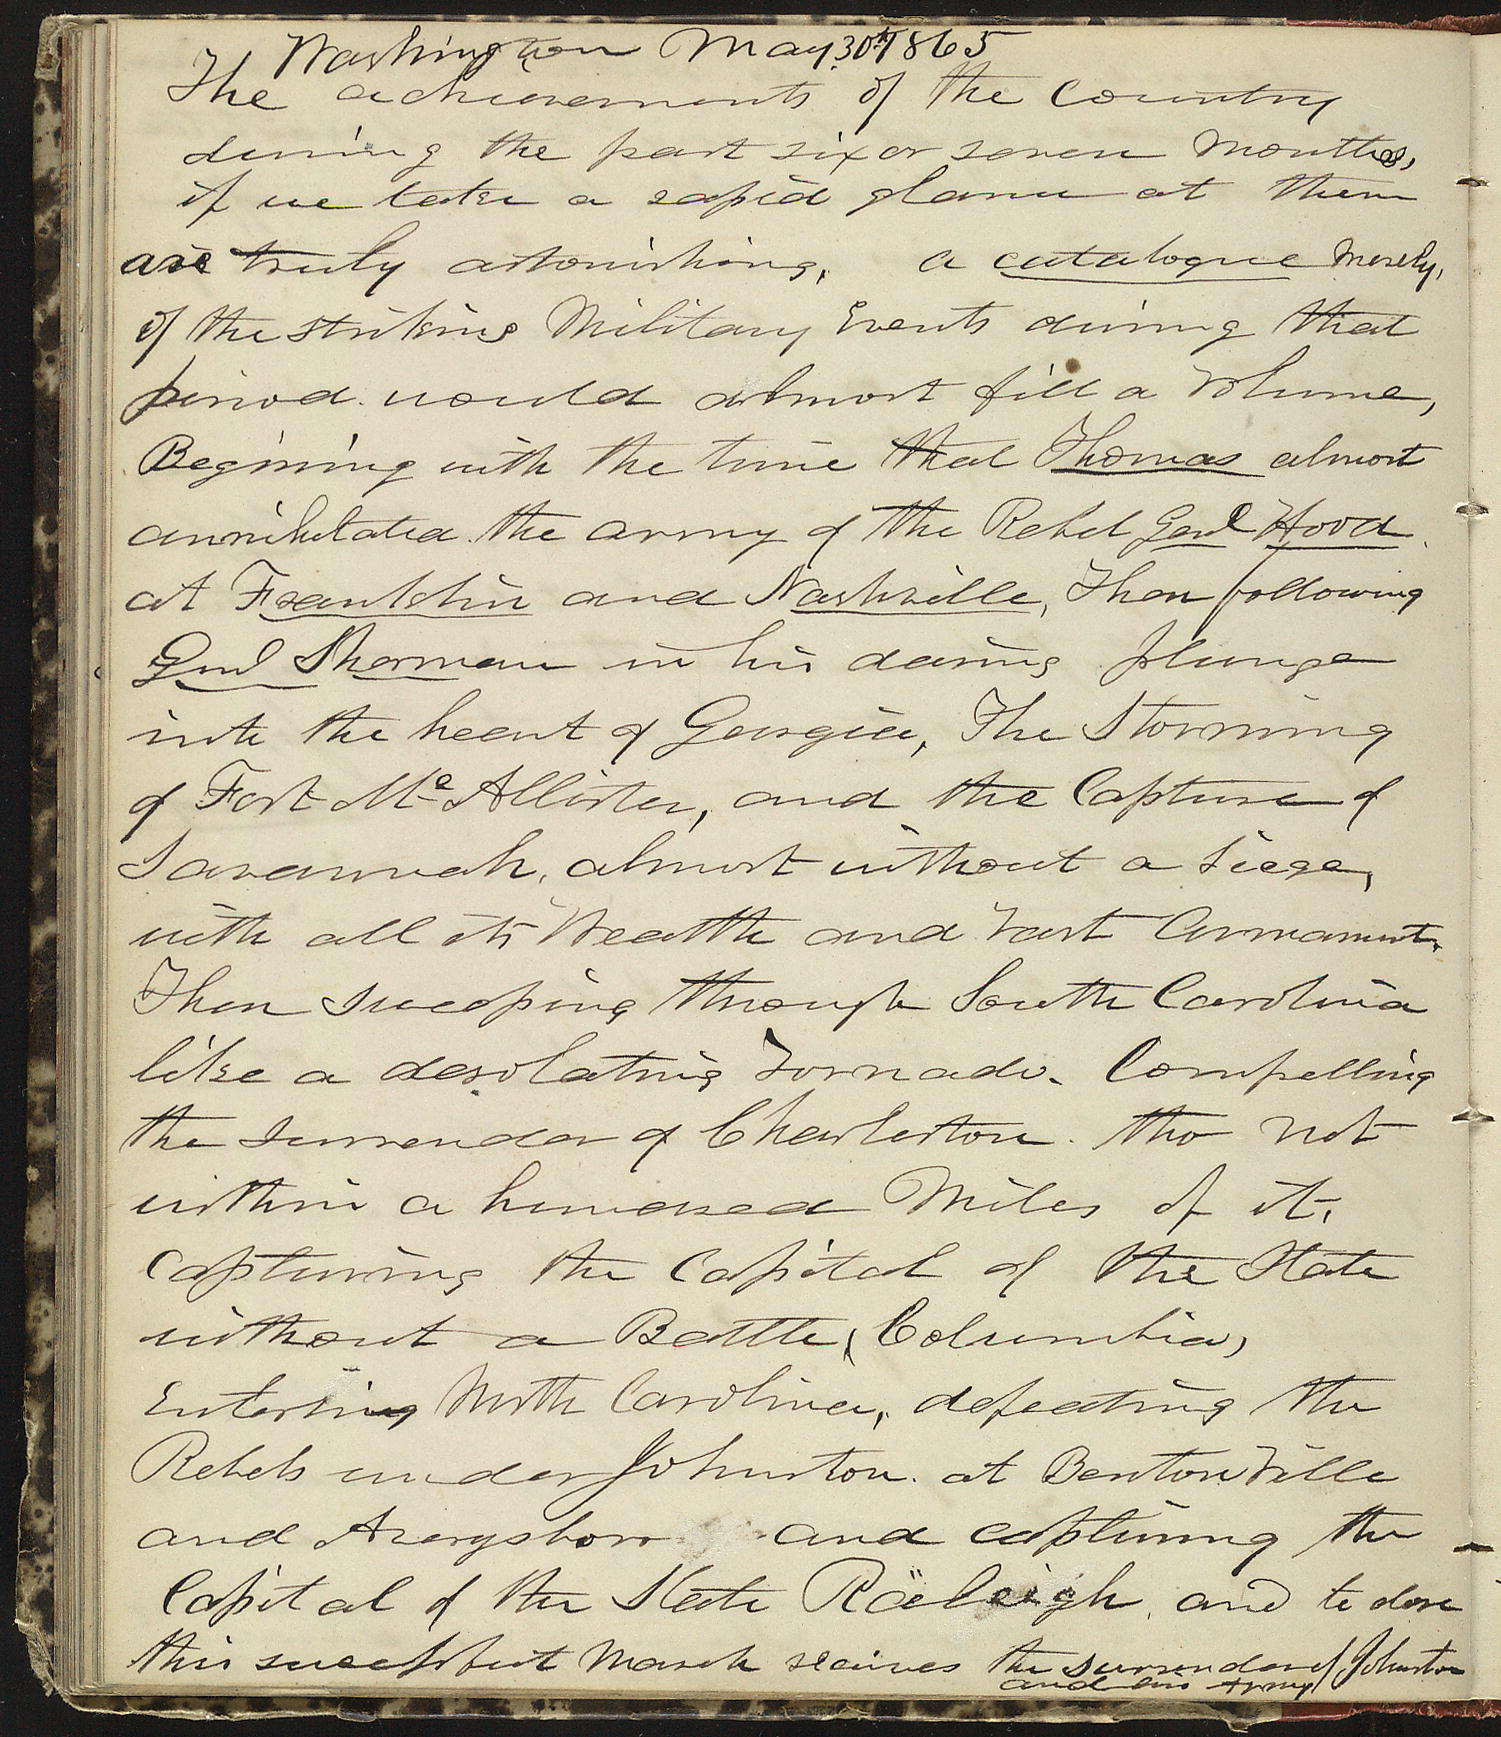 Horatio Nelson Taft Diary, May 30, 1865